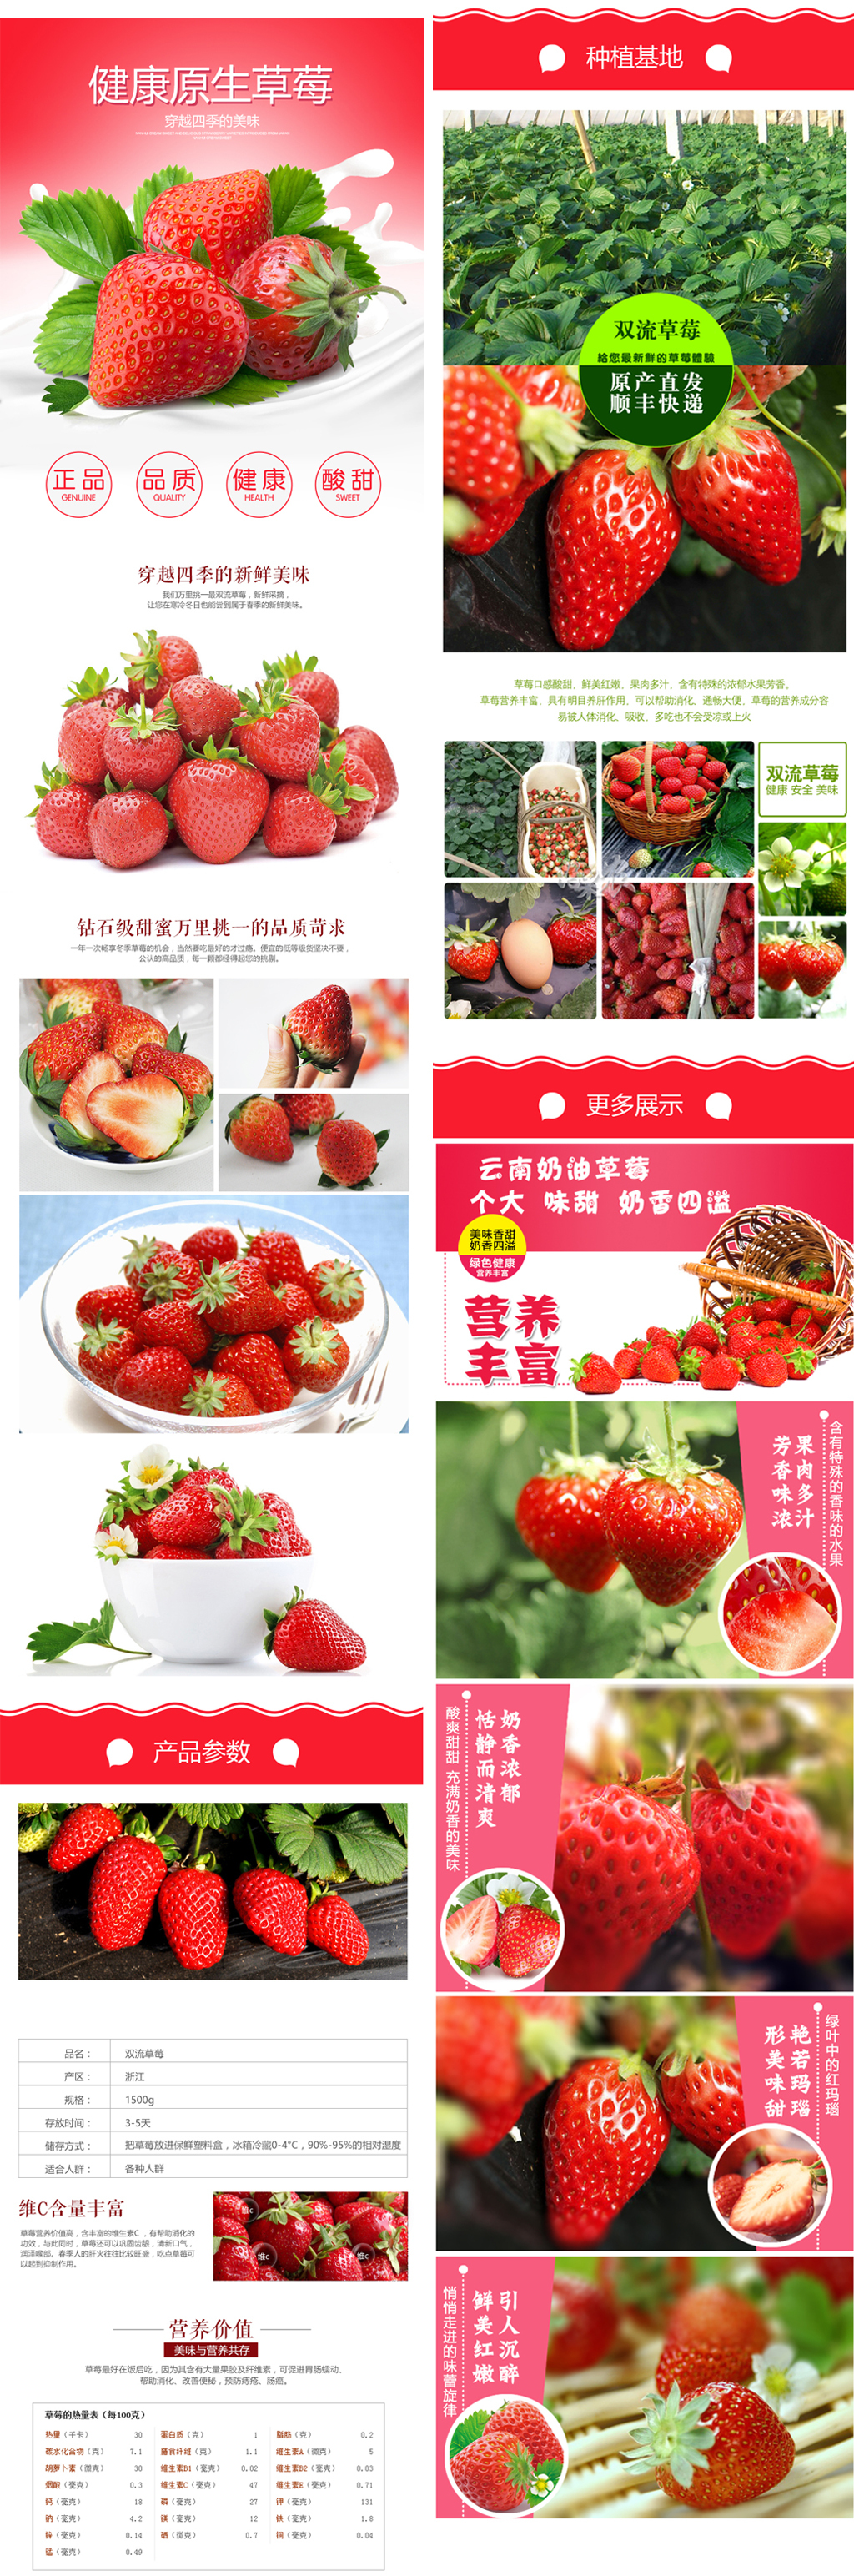 淘宝水果草莓详情页设计图片